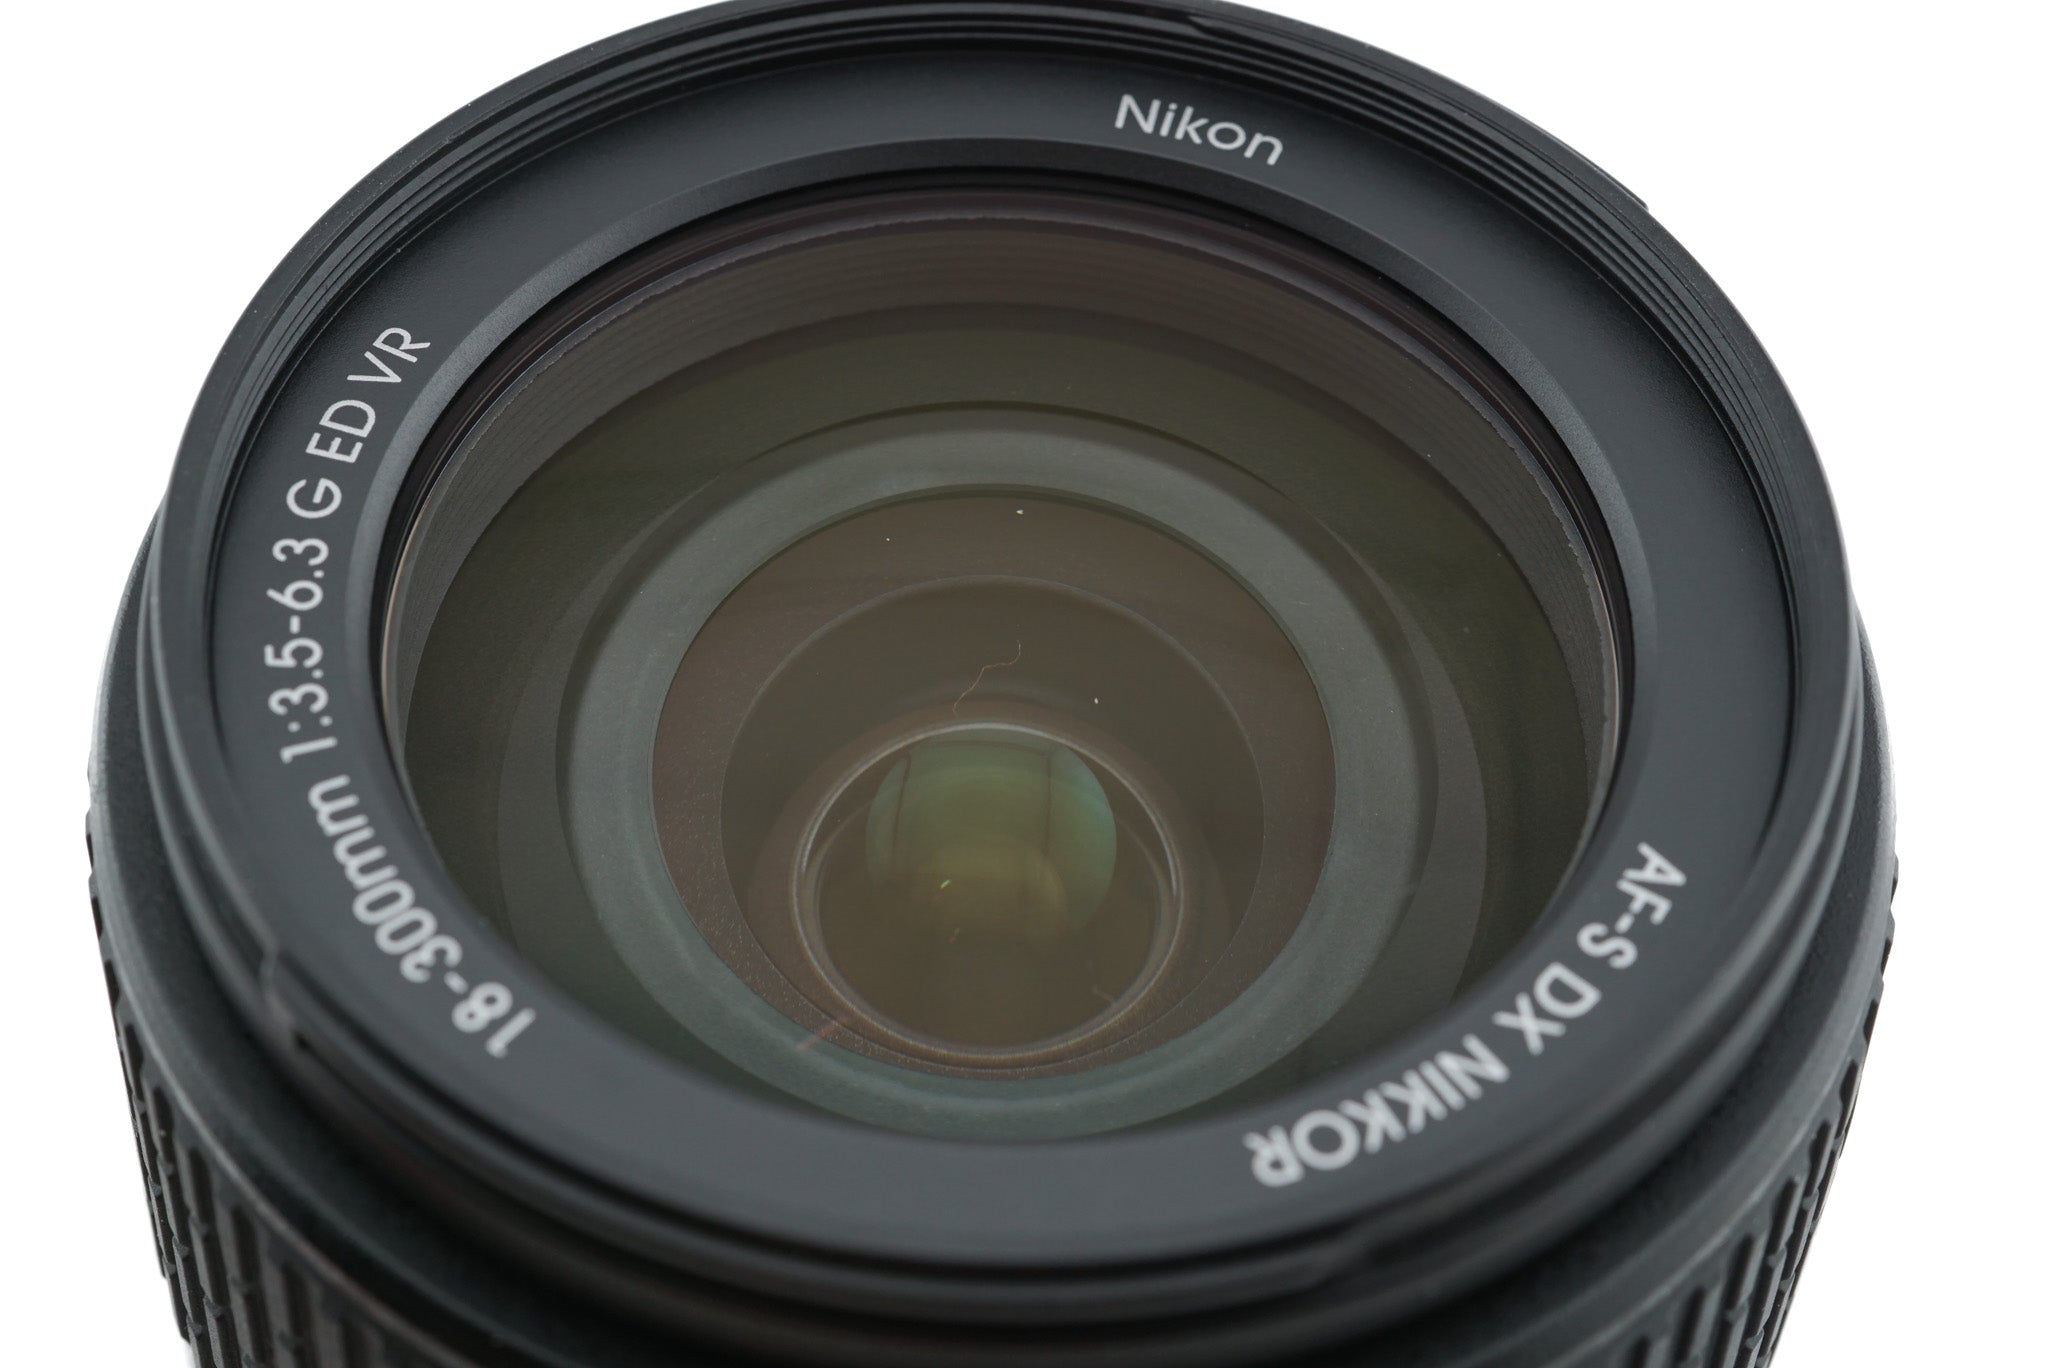 Nikon D7500 + AF-S DX Nikkor 18-300mm VR 3.5-6.3 - Foto Erhardt